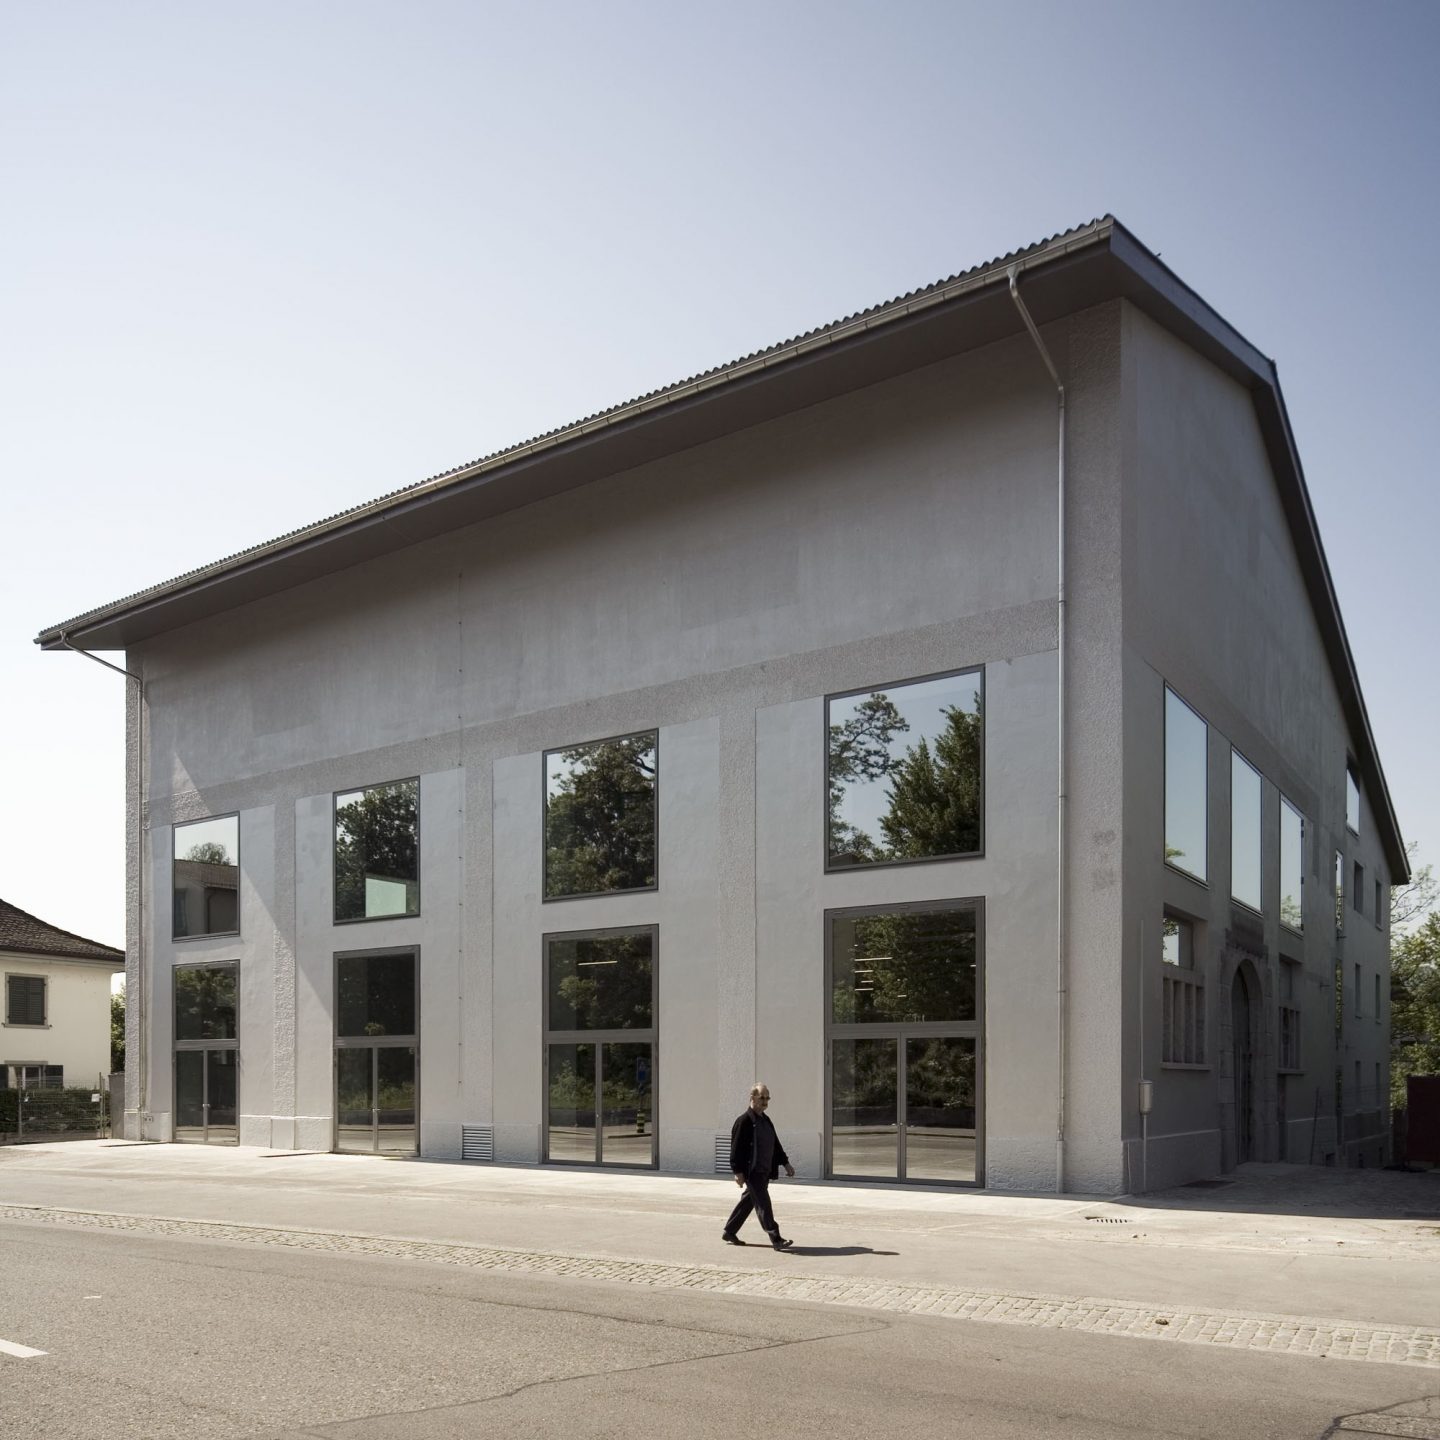 Tanzhaus, Zürich ZH. Hildebrand Studios AG, Architecture and Urban Design in Zurich, Switzerland